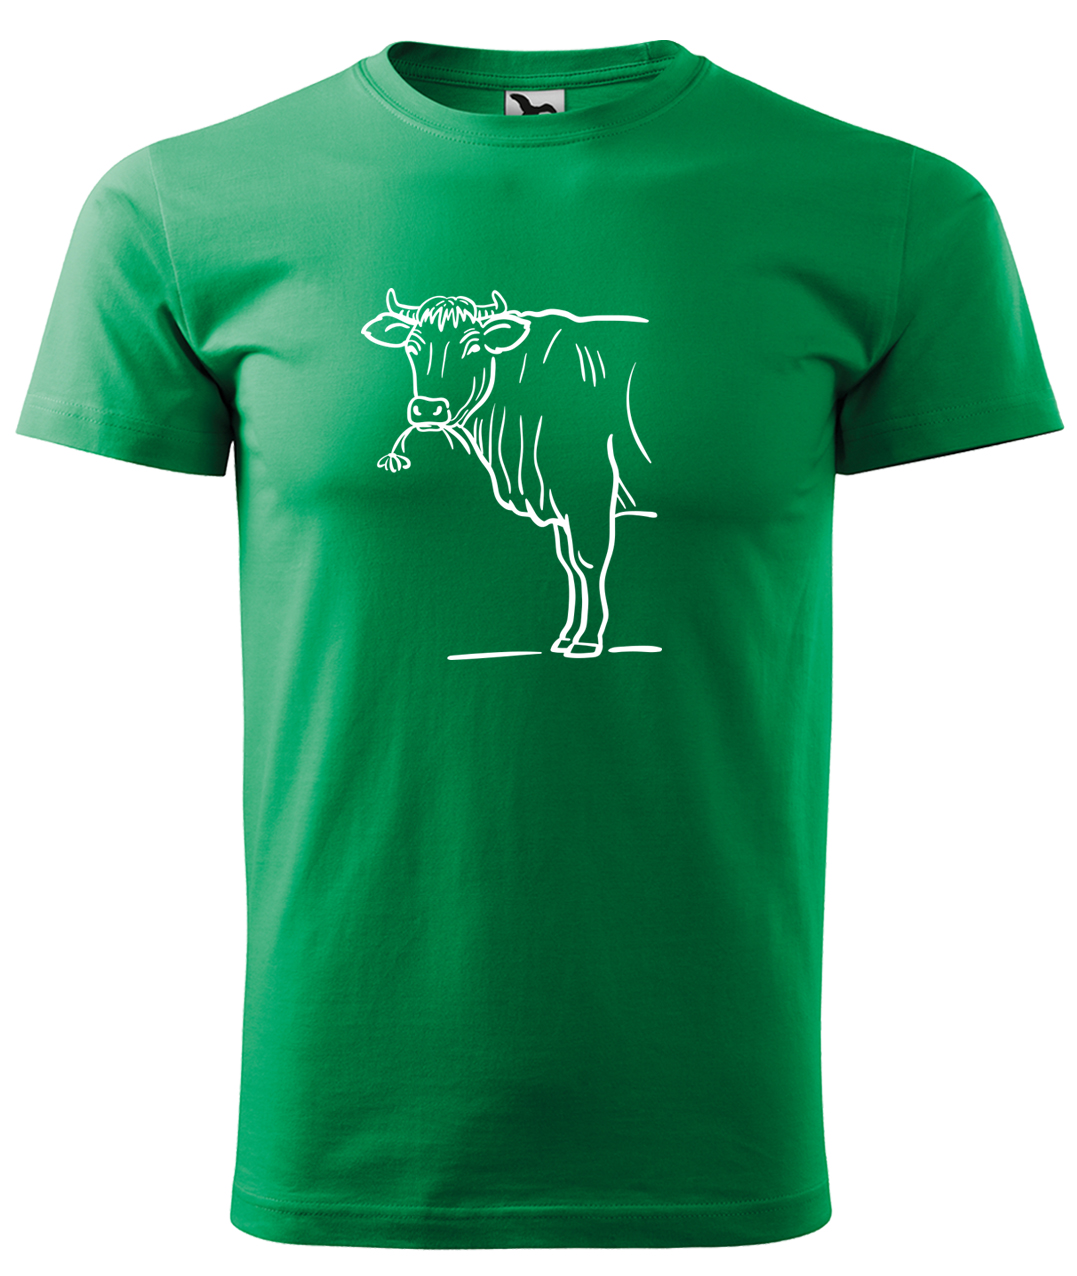 Dětské tričko s krávou - Býk Velikost: 4 roky / 110 cm, Barva: Středně zelená (16), Délka rukávu: Krátký rukáv